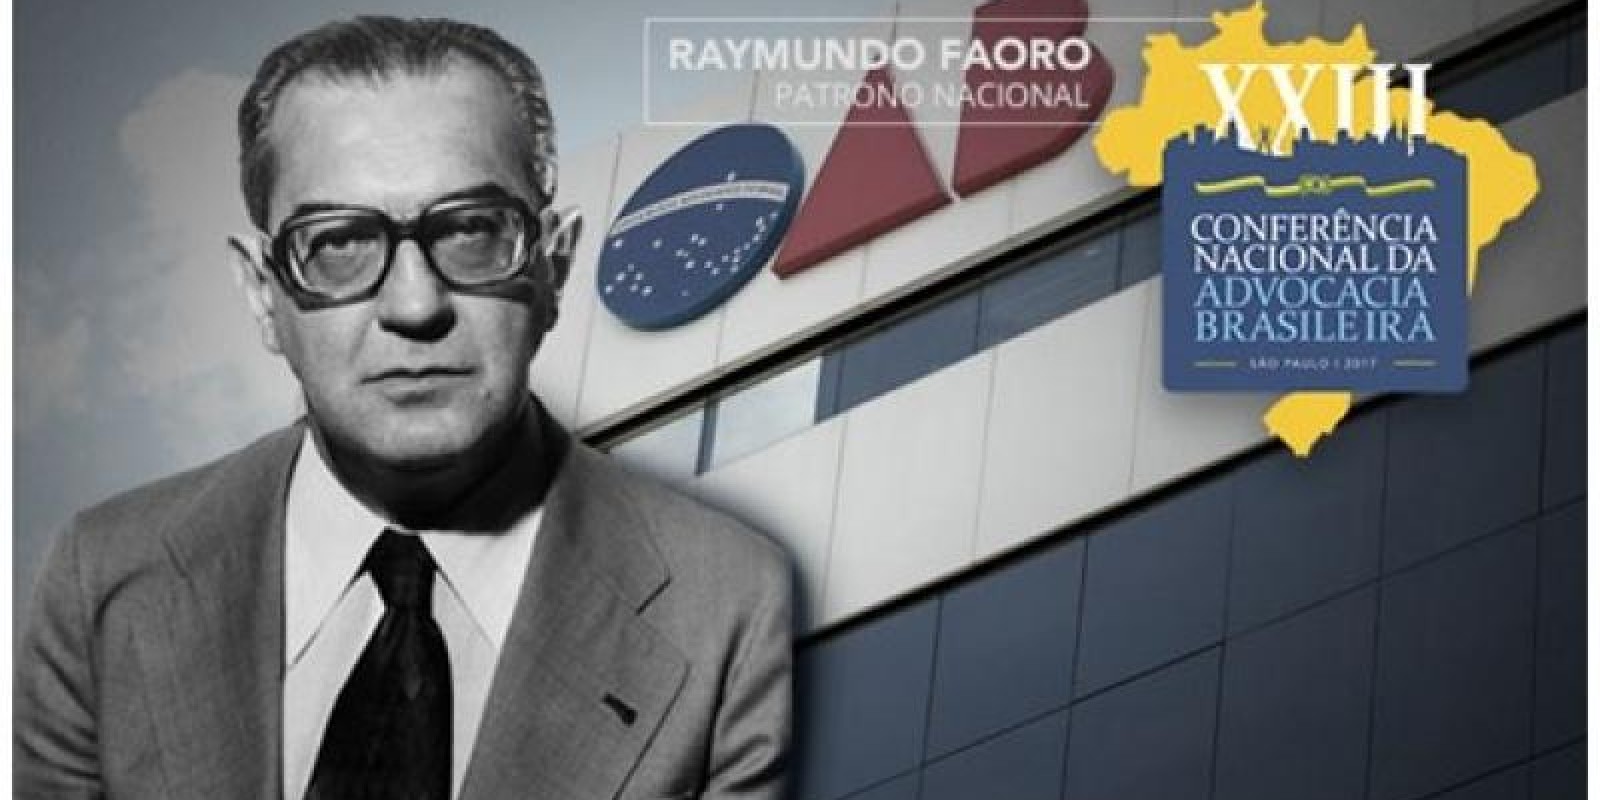 RAYMUNDO FAORO- “OS DONOS DO PODER- FORMAÇÃO DO PATRONATO POLÍTICO BRASILEIRO”